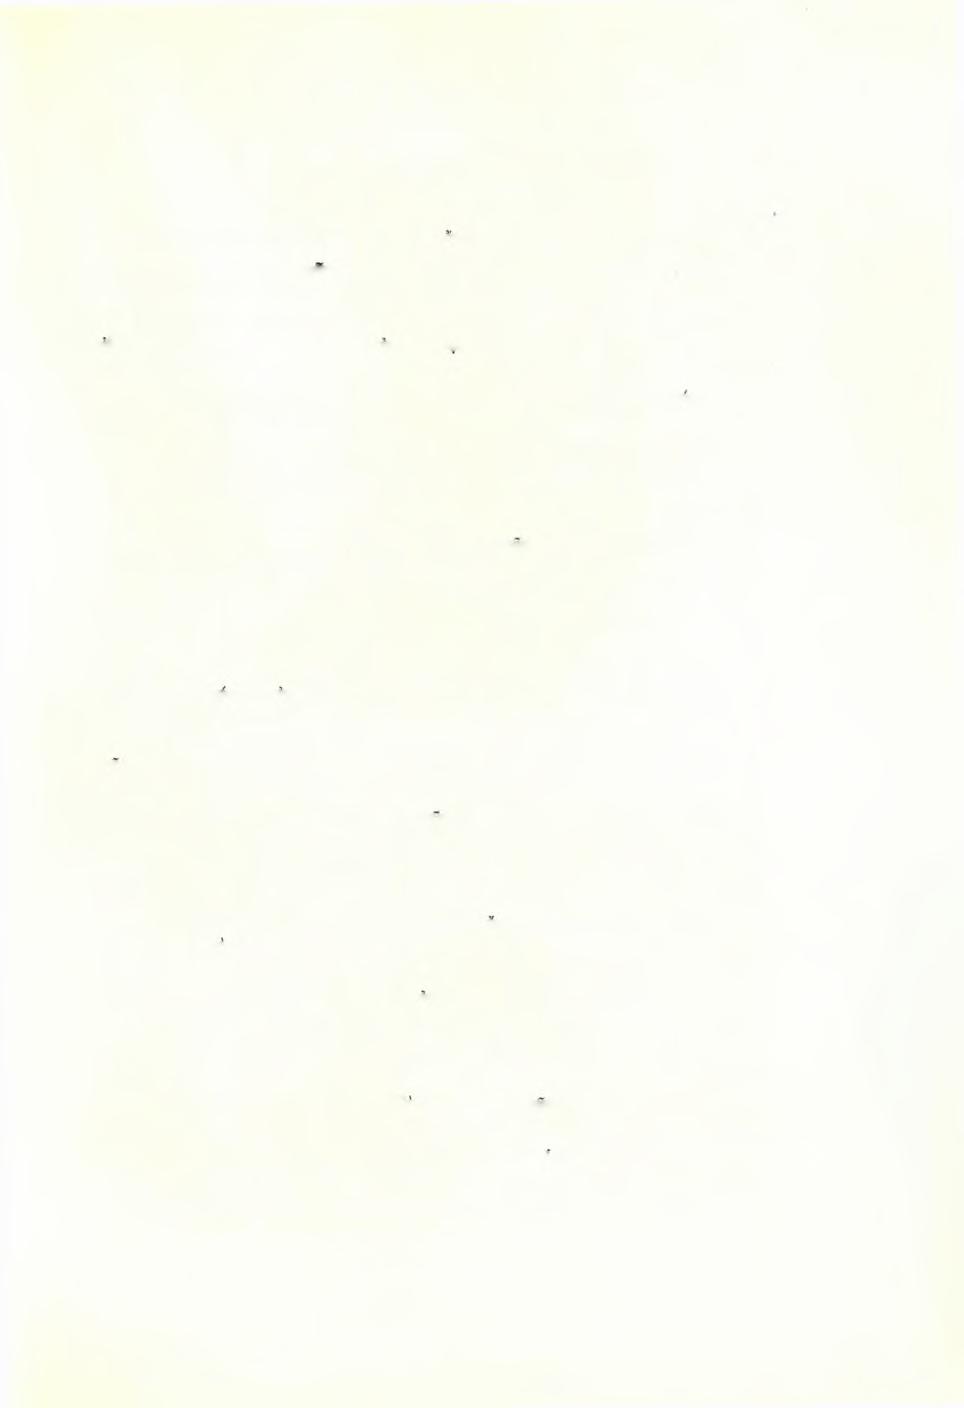 Δημοσιεύματα τής Αρχαιολογικής 'Εταιρείας 1837-1969 263 Δραχμαι 4ον, σελίδες ις ' -(- 140, πίνακες 93 καί 9 έγχρωμοι. 1963... 550. 49. Χρυσούλα Καρδαρα- Ροδιακή Αγγειογραφία.